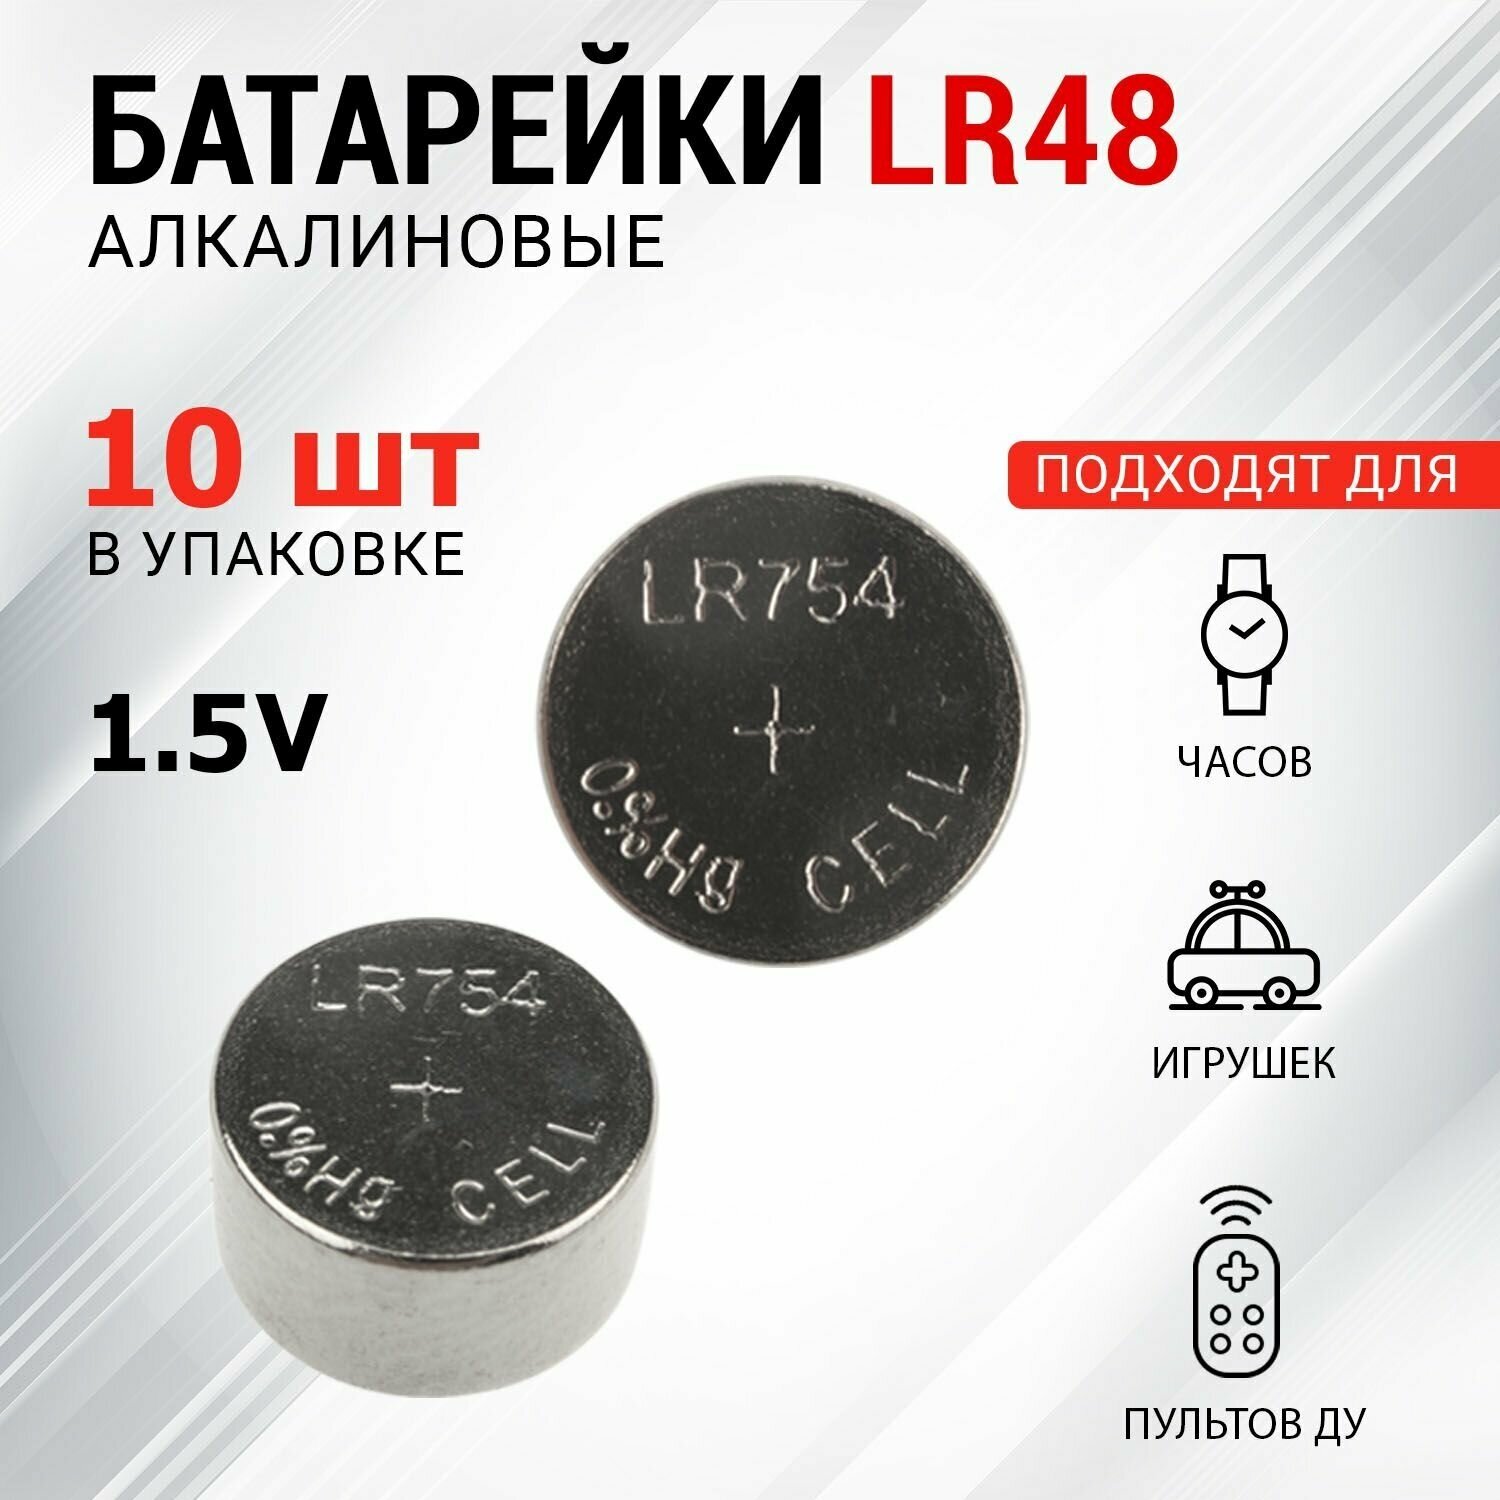 Батарейки REXANT типа LR48 (AG5 LR754 G5 193 GP93A 393 SR754W) 10 ук в упаковке